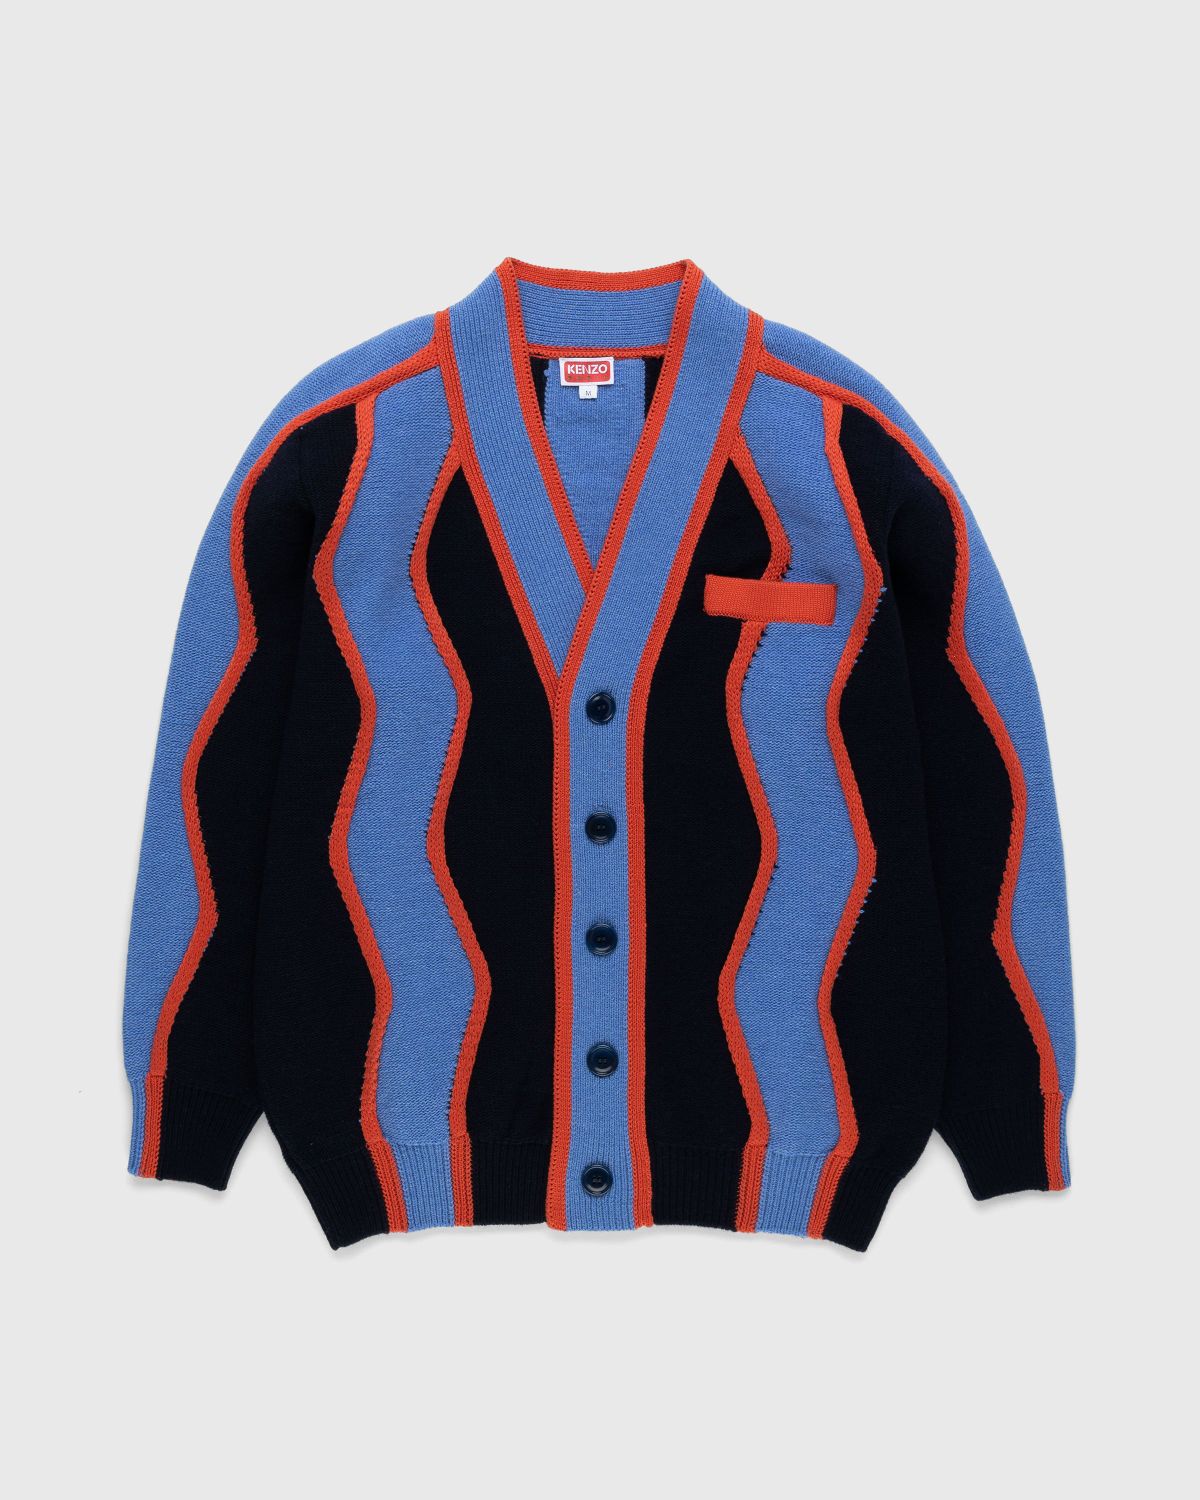 Kenzo – Wavy Stripe Cardigan - Knitwear - Blue - Image 1